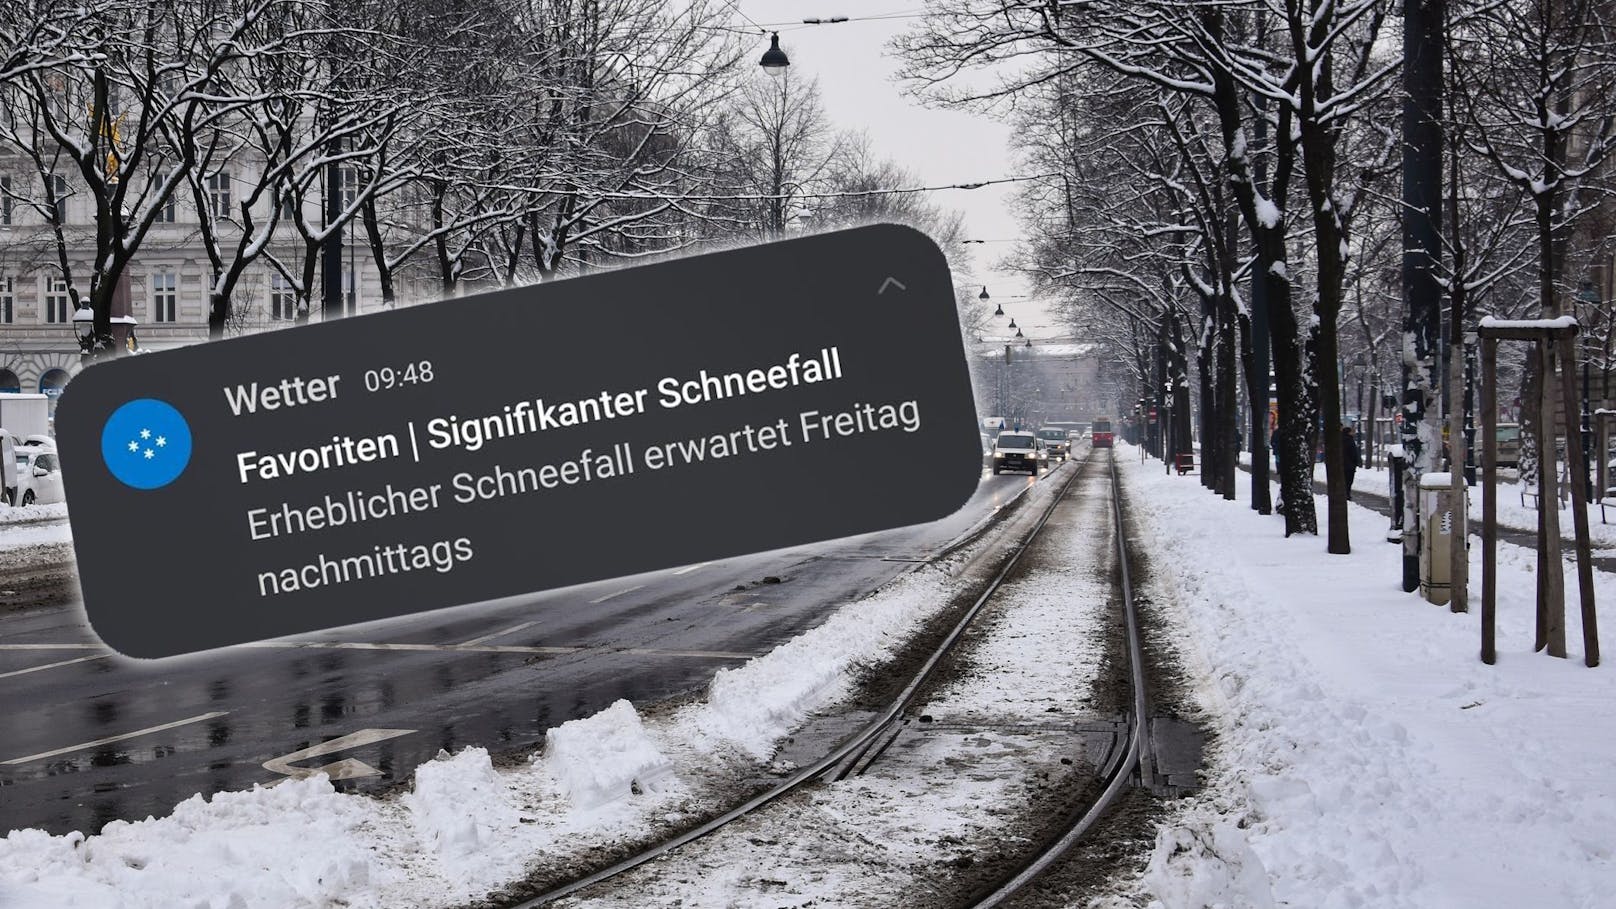 Wien wird am Freitag von einer Winter-Walze heimgesucht. Per Handy wird bereits gewarnt.